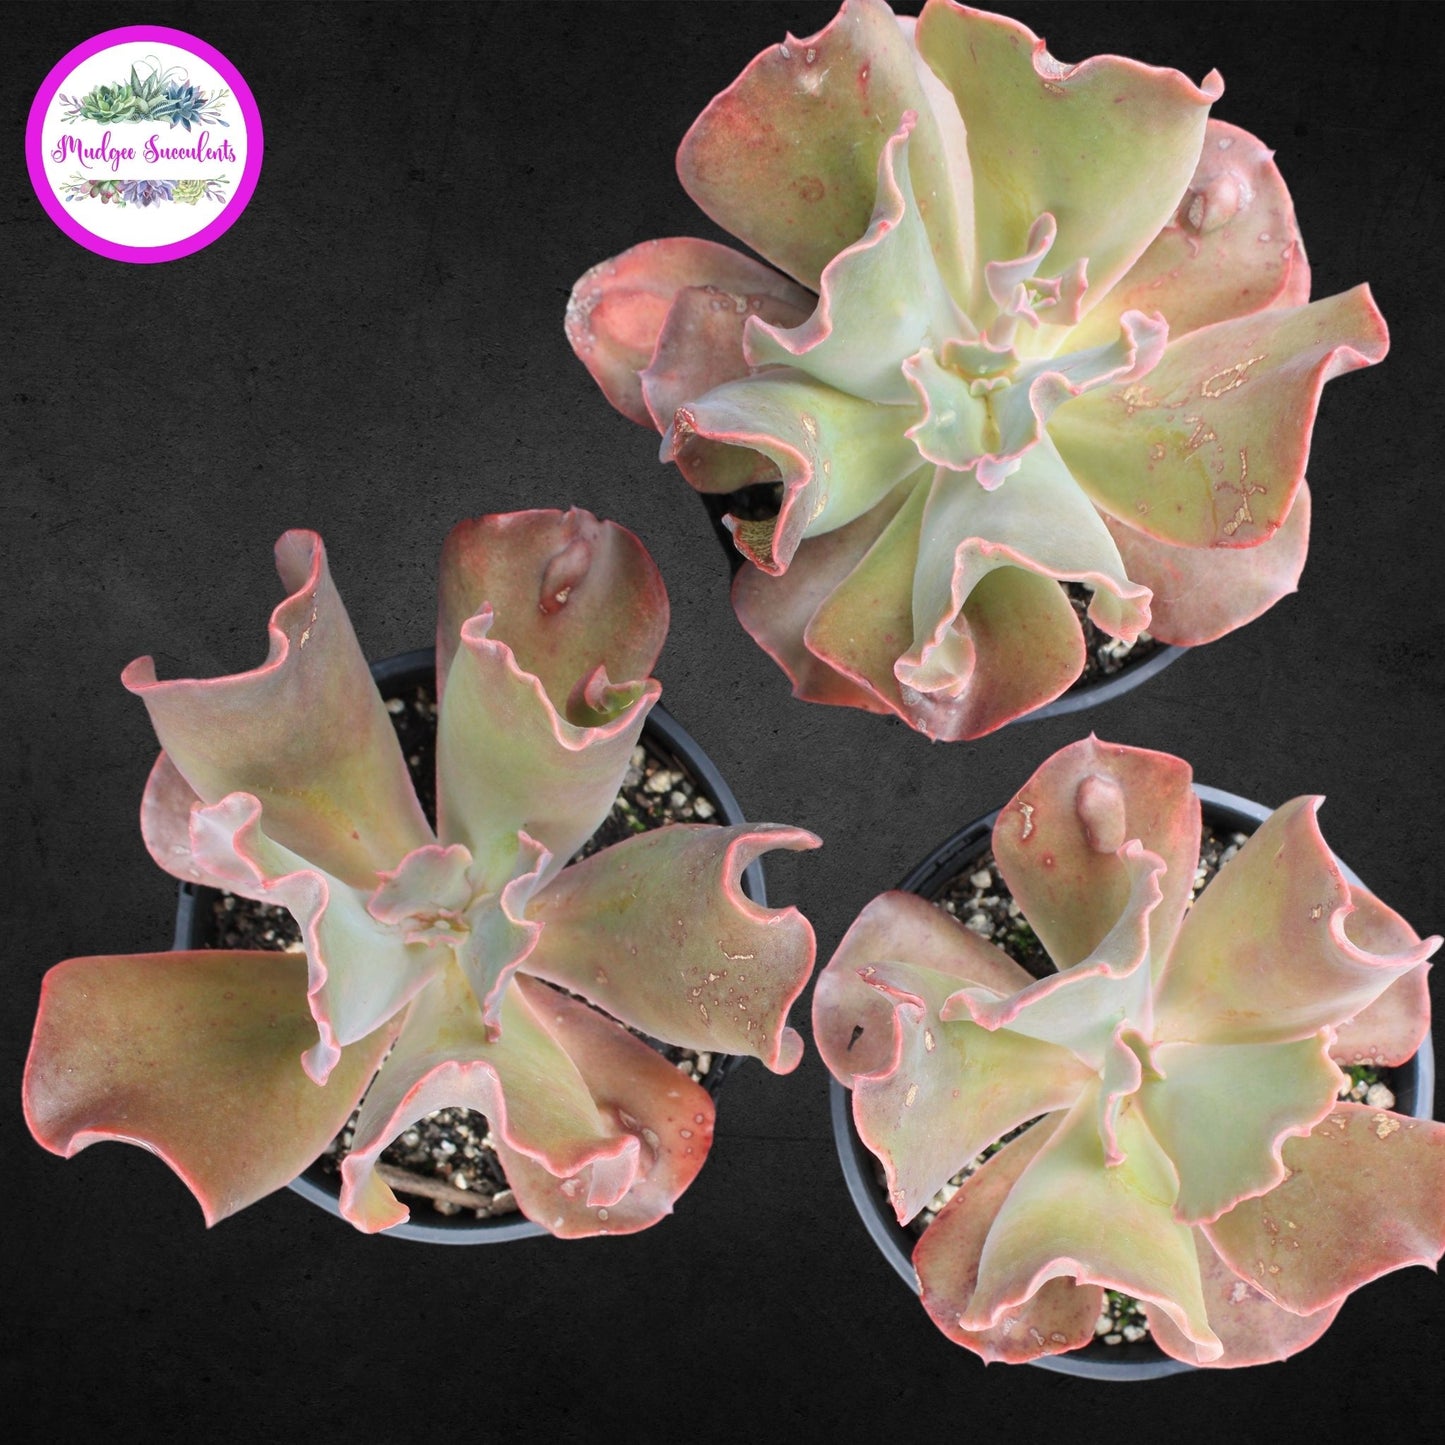 Succulent Plant - Echeveria 'Poro' - Mudgee Succulents Online Shop